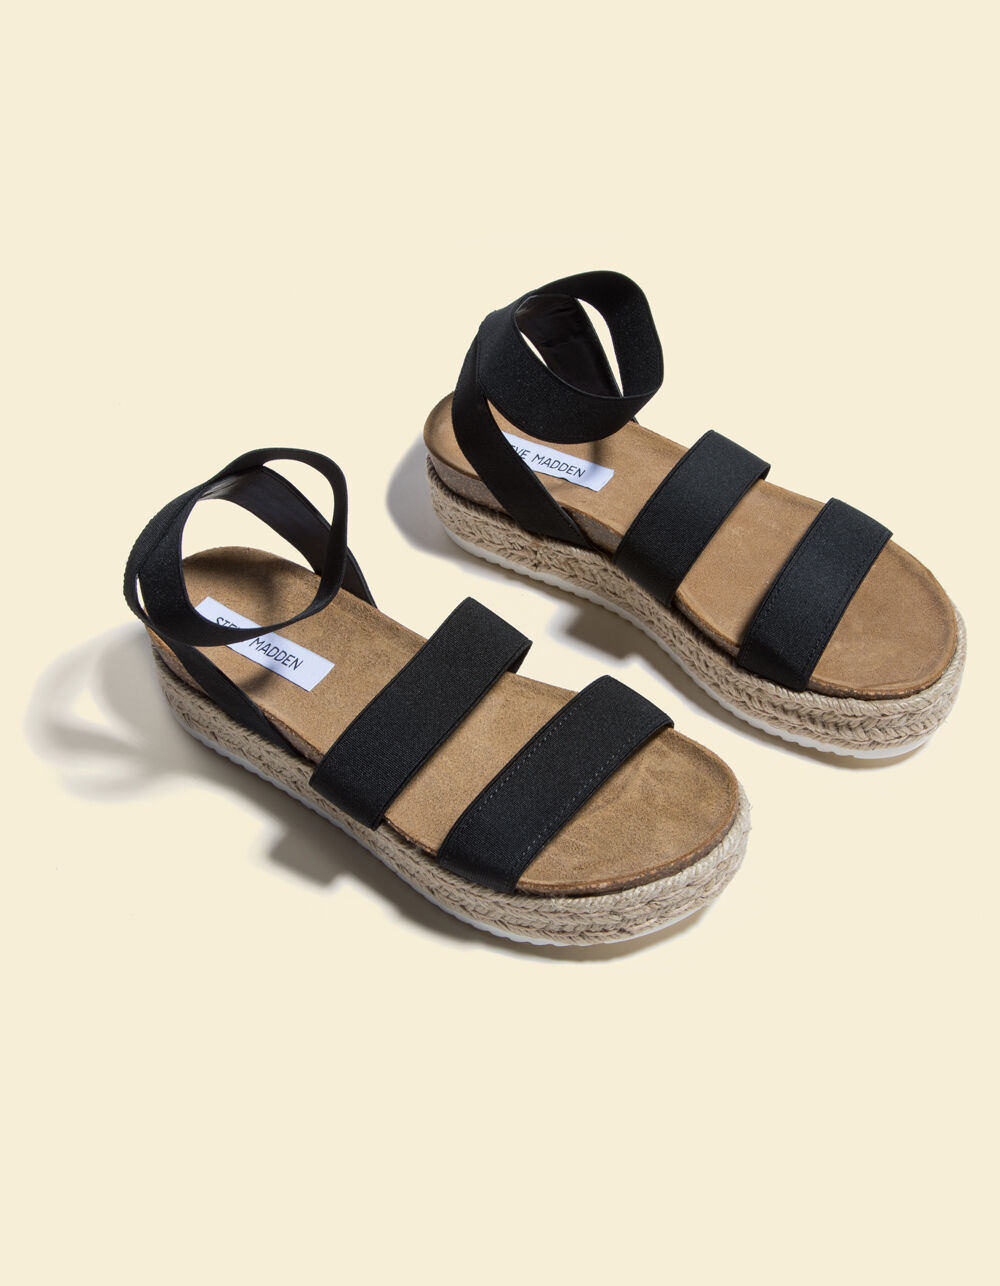 STEVE MADDEN Kimmie Black Flatform Espadrille Sandals - BLACK | Tillys